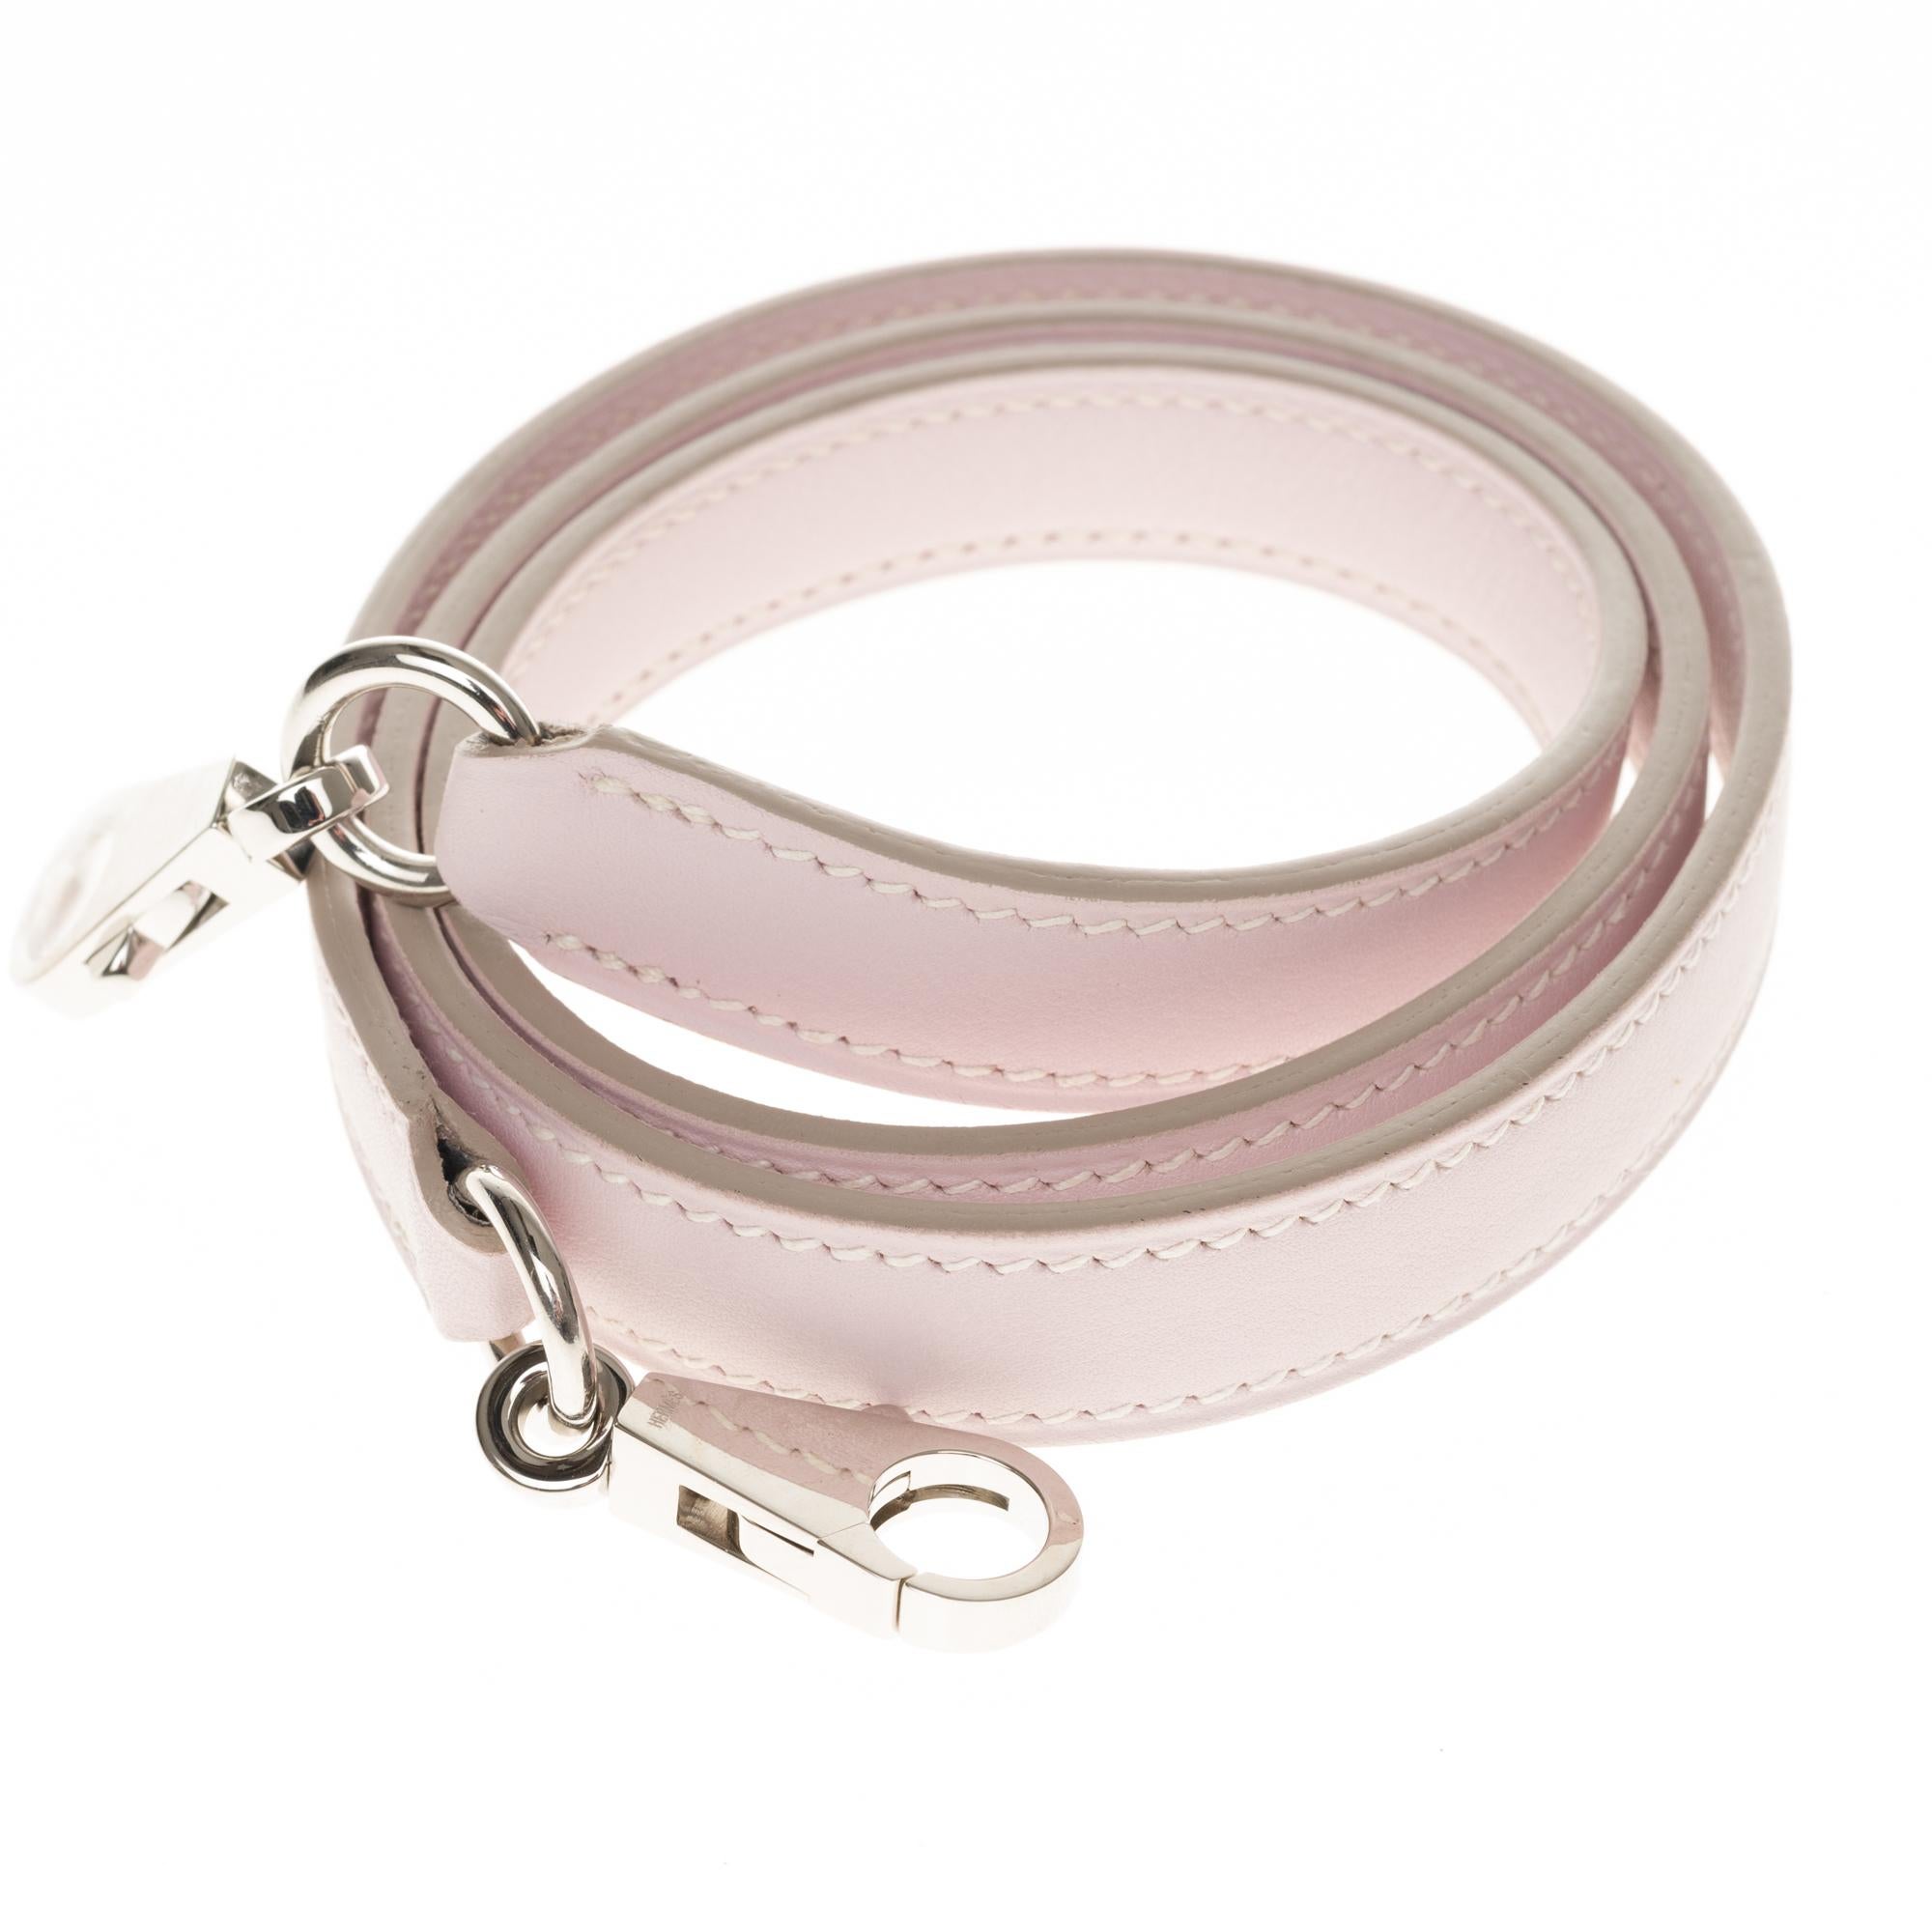 NEW - Hermès bag strap in Pink Sakura swift leather, silver Palladium hardware 1